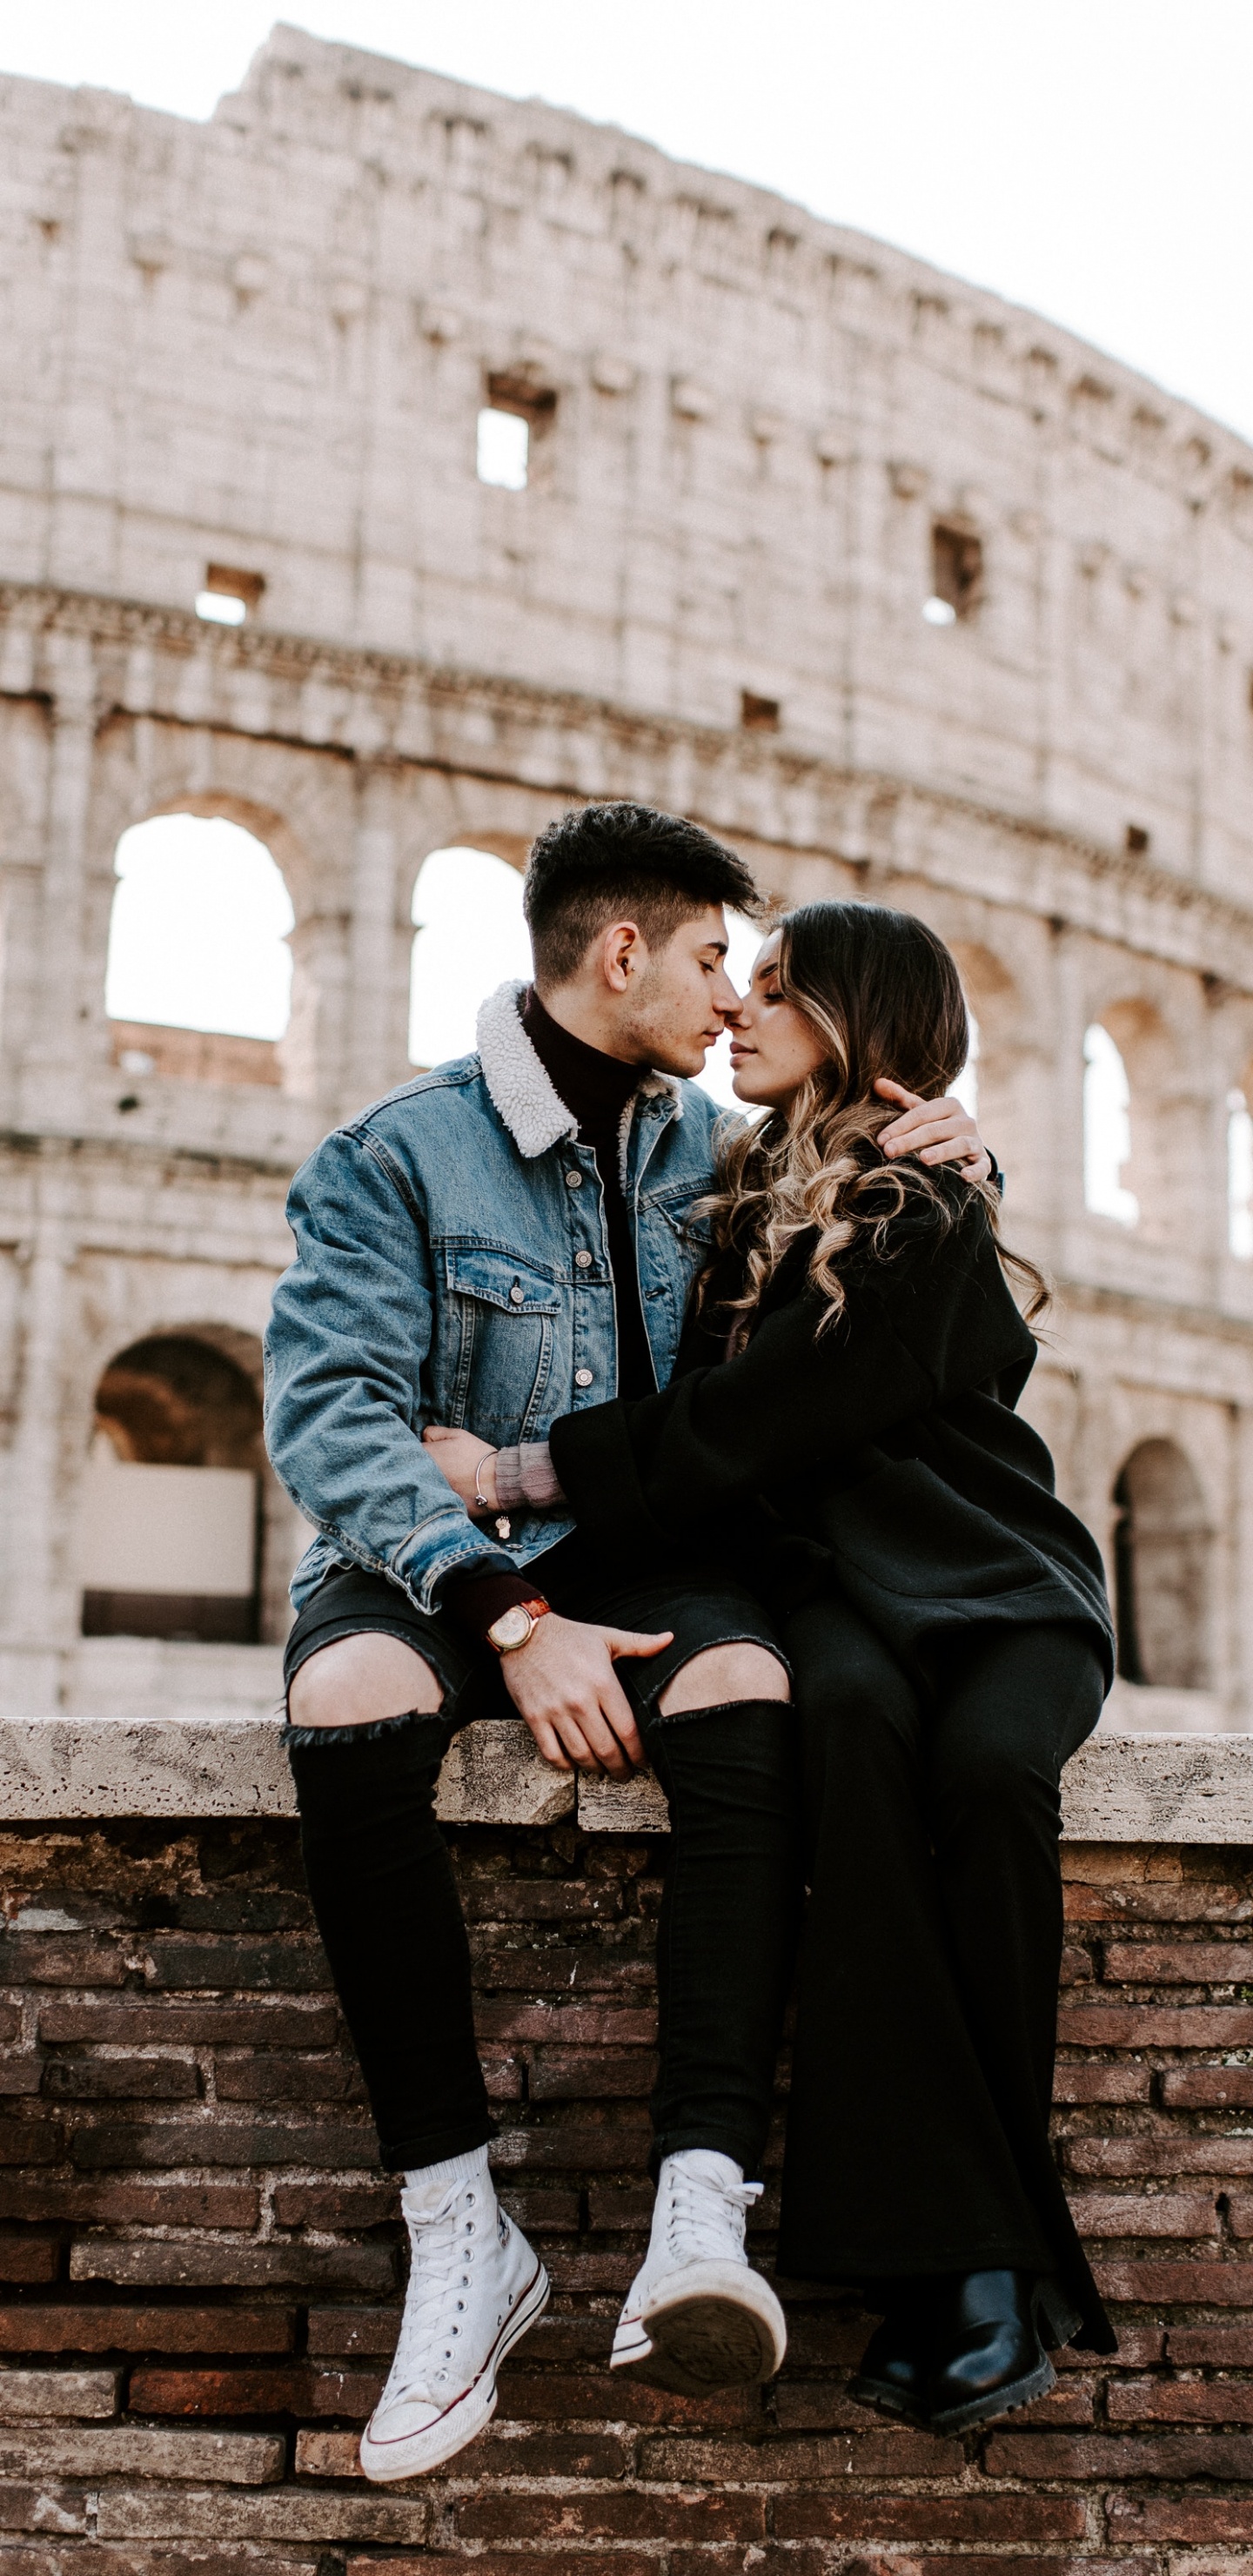 罗马竞技场, 浪漫, 蜜月, 相互作用, 爱情 壁纸 1440x2960 允许